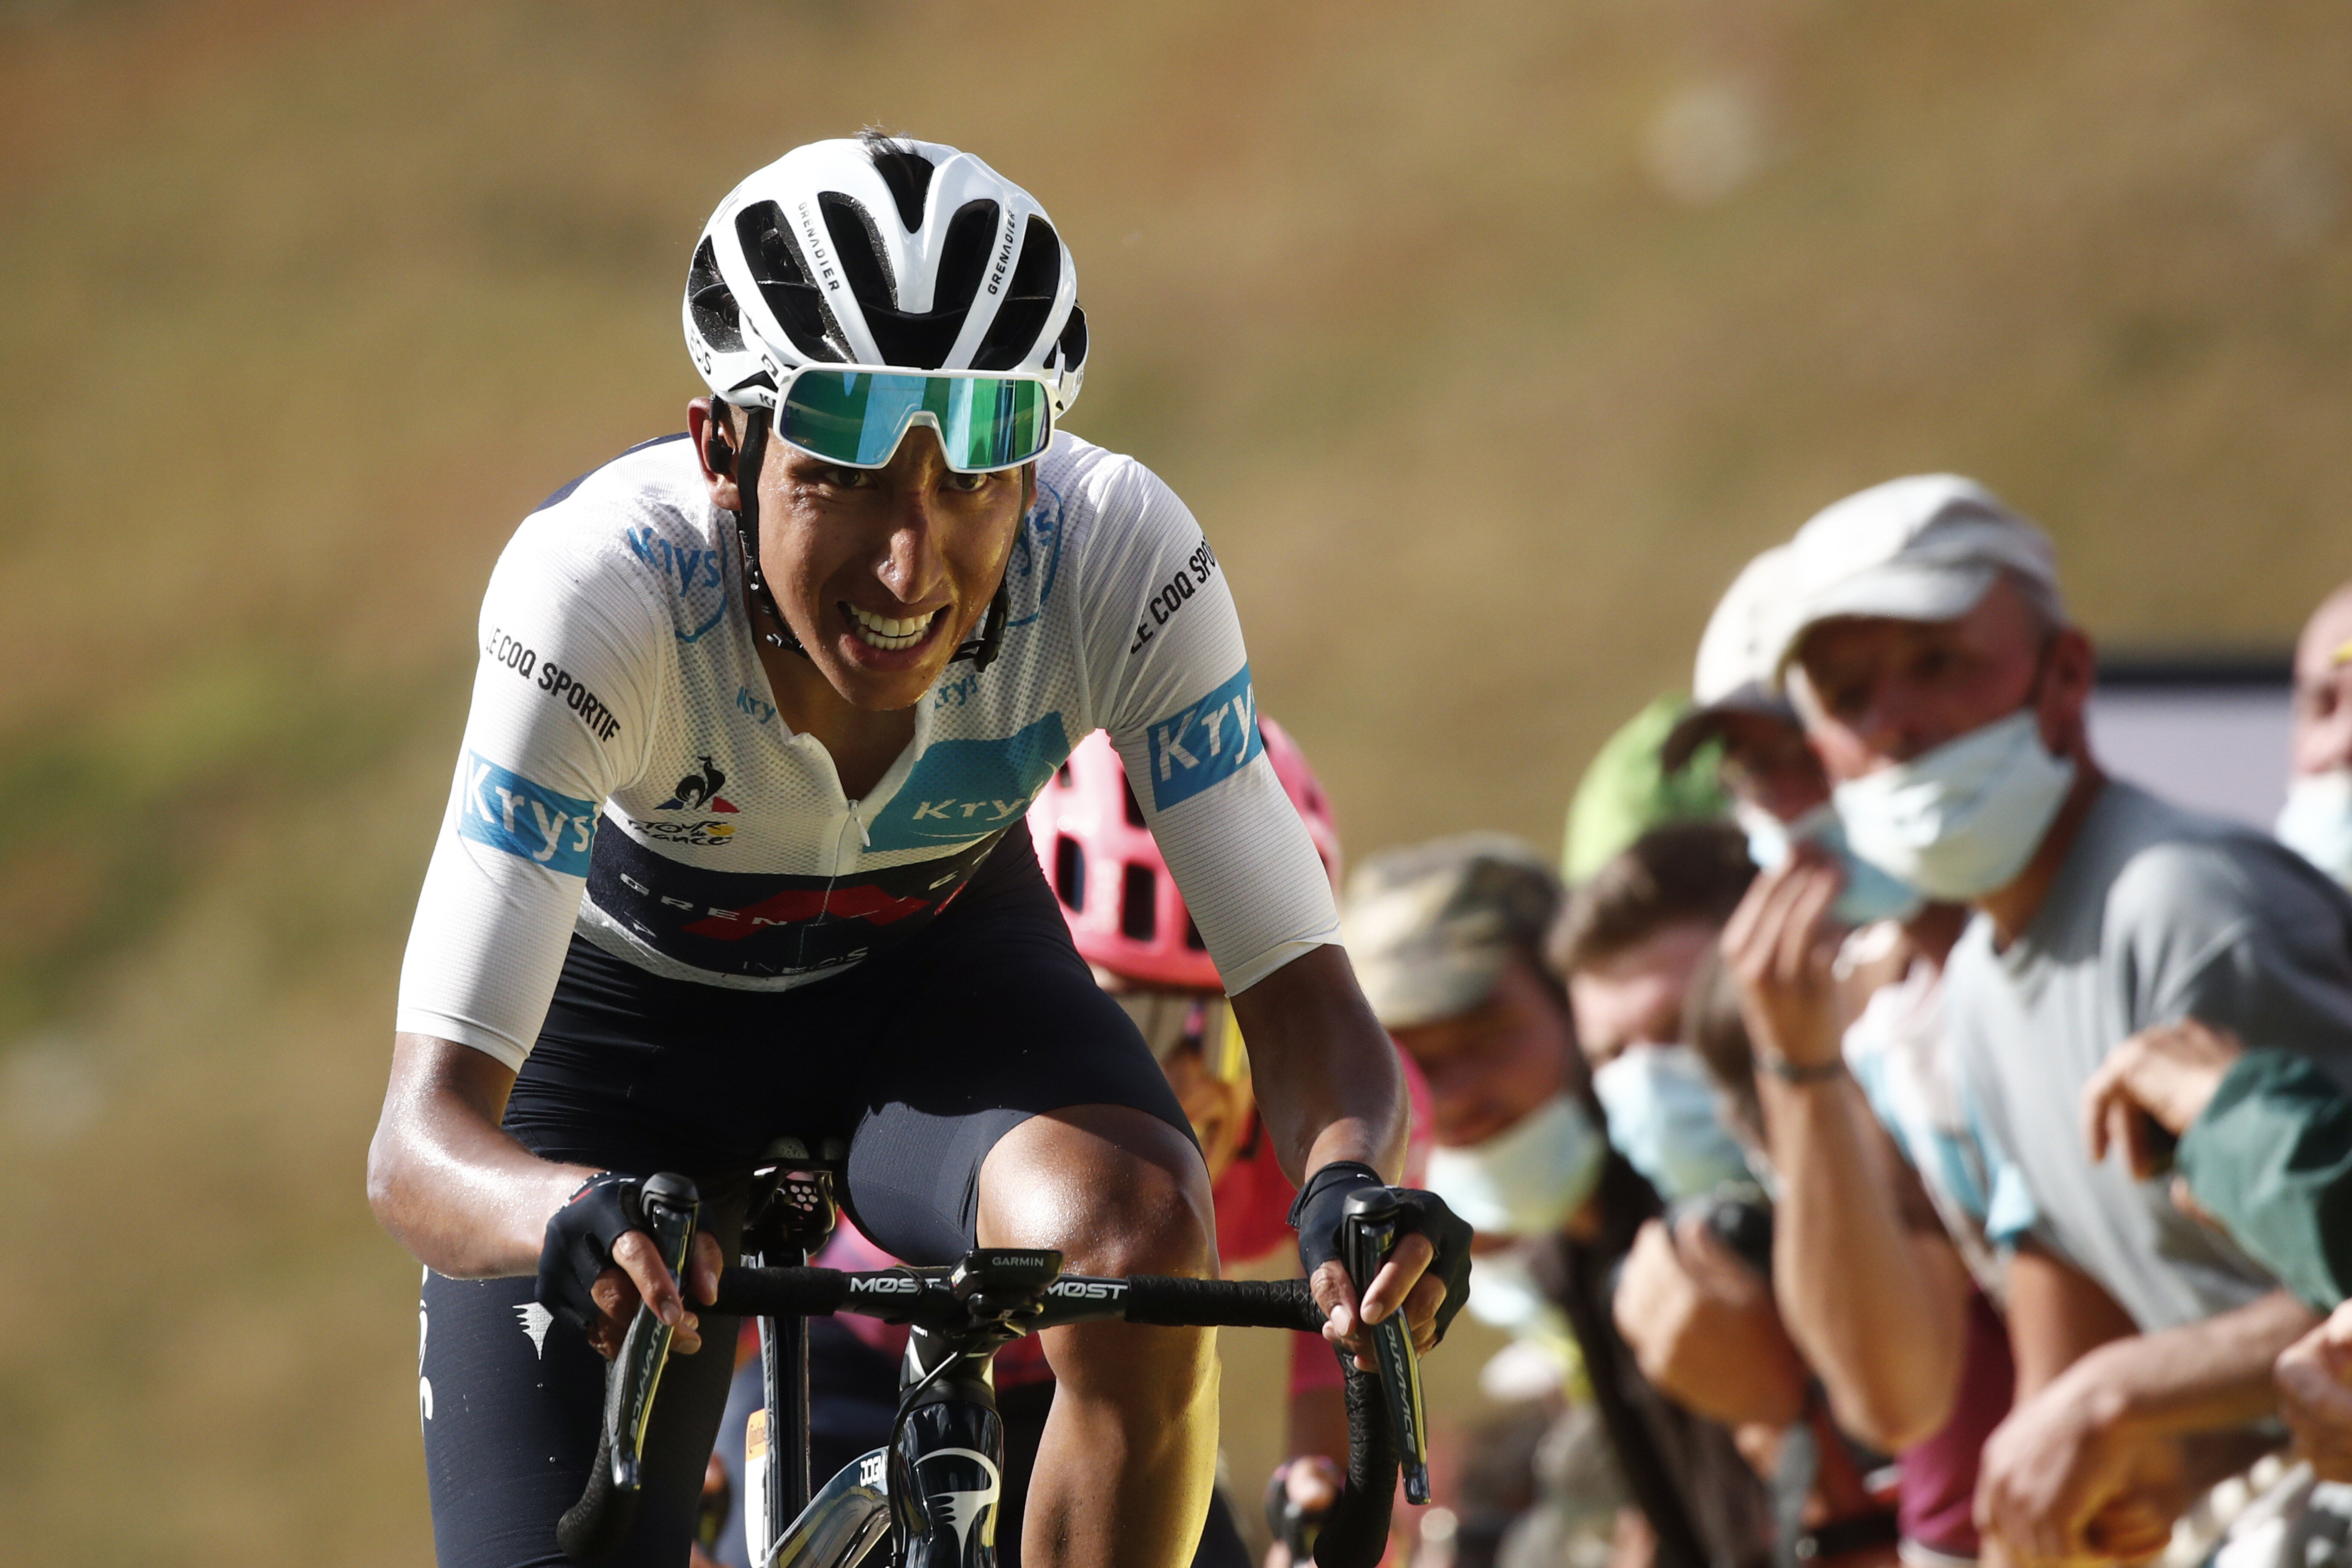 A punta de bocadillo, panela y valentía: 40 años del primer pedalazo de los  'escarabajos' colombianos en el Tour de Francia